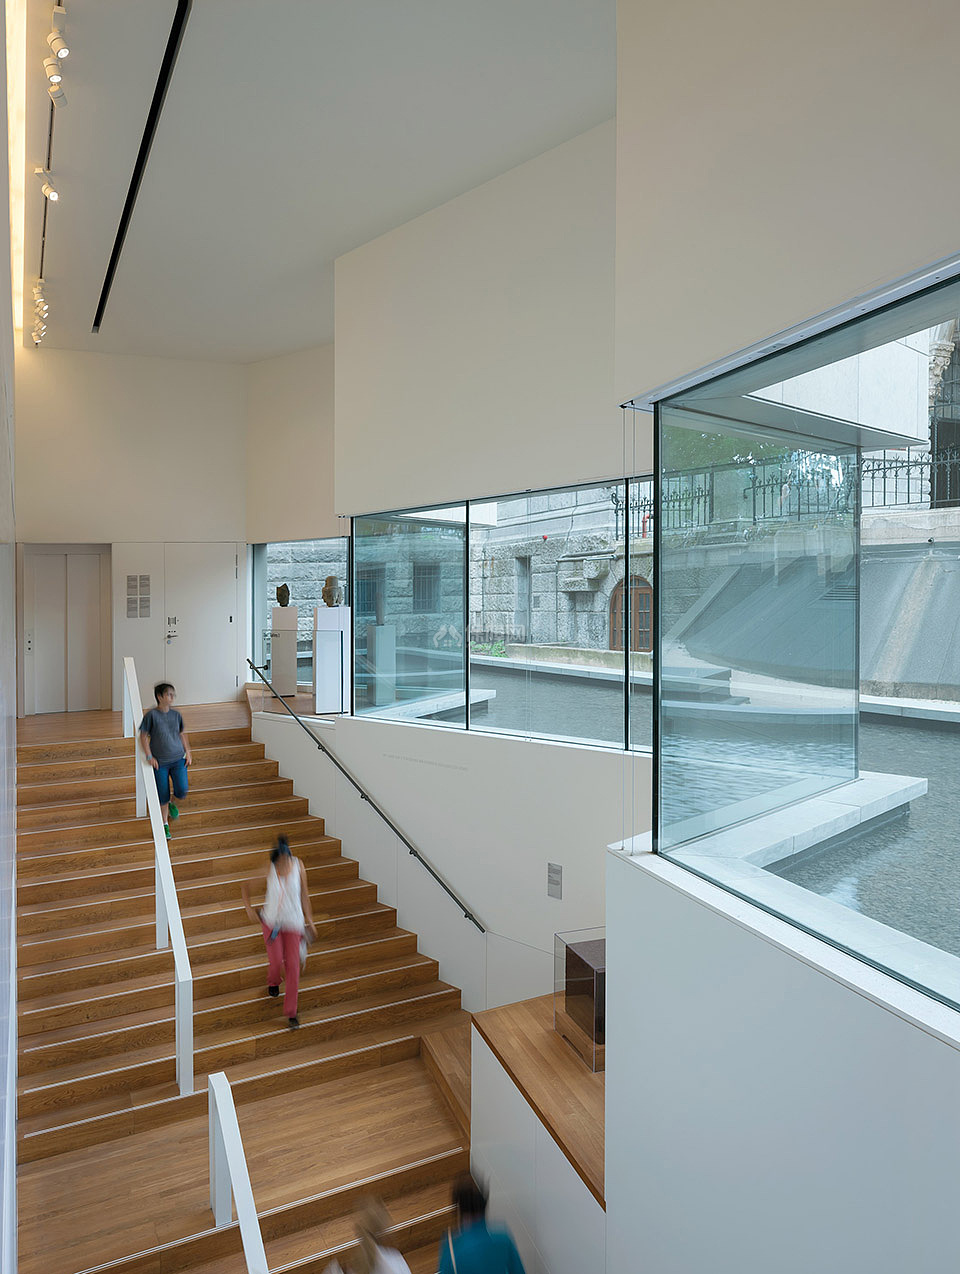 荷兰国家博物馆亚洲展馆之楼梯设计效果图